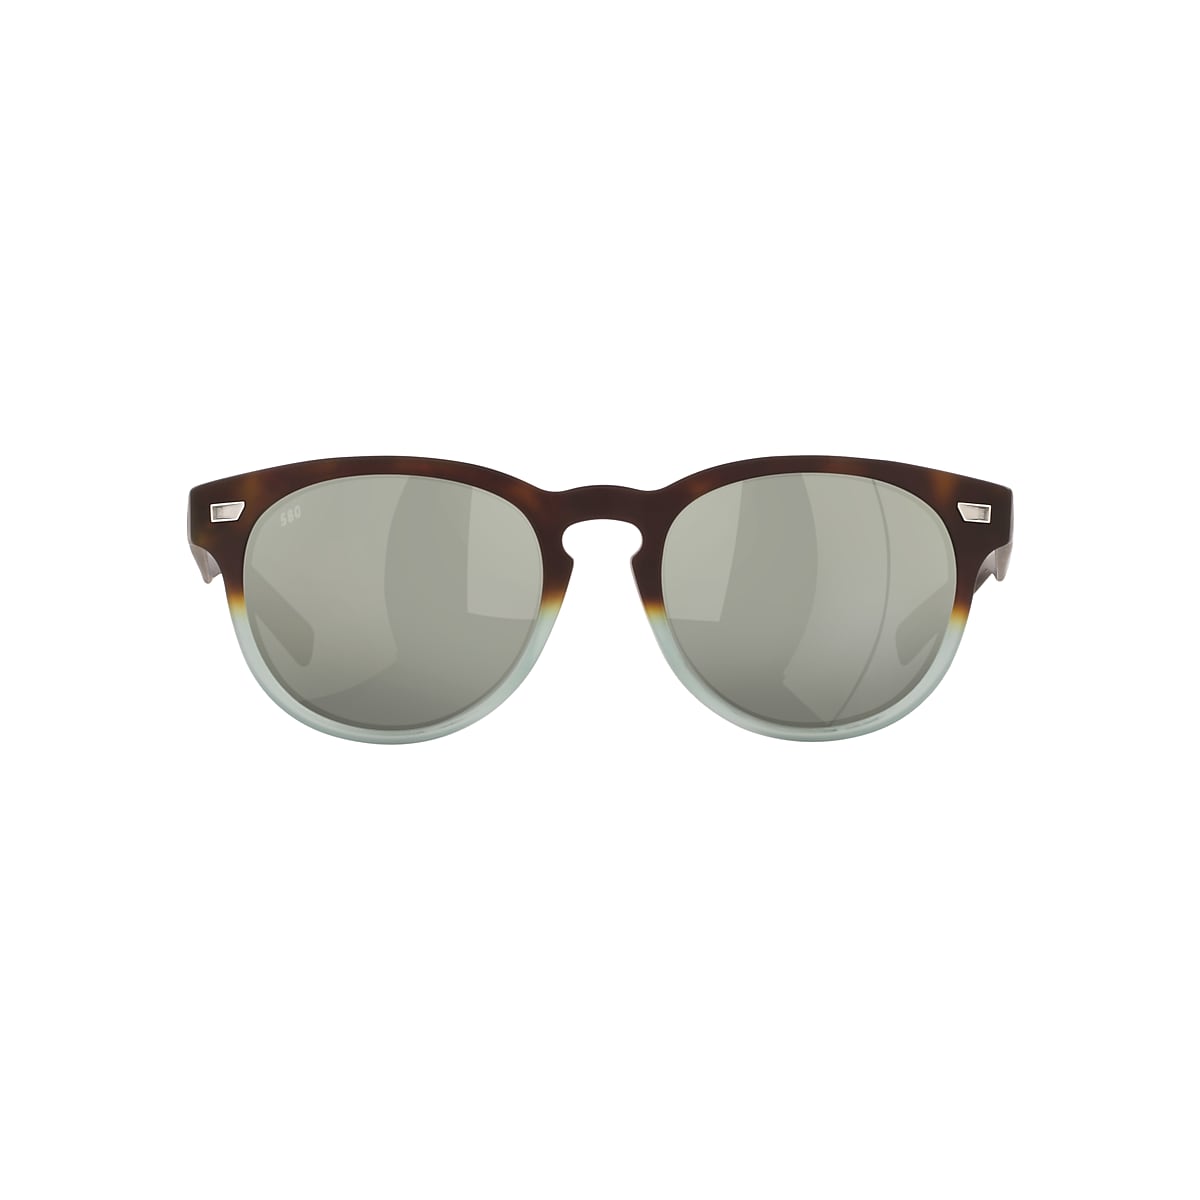 Del Mar Polarized Sunglasses in Gray Silver Mirror | Costa Del Mar®